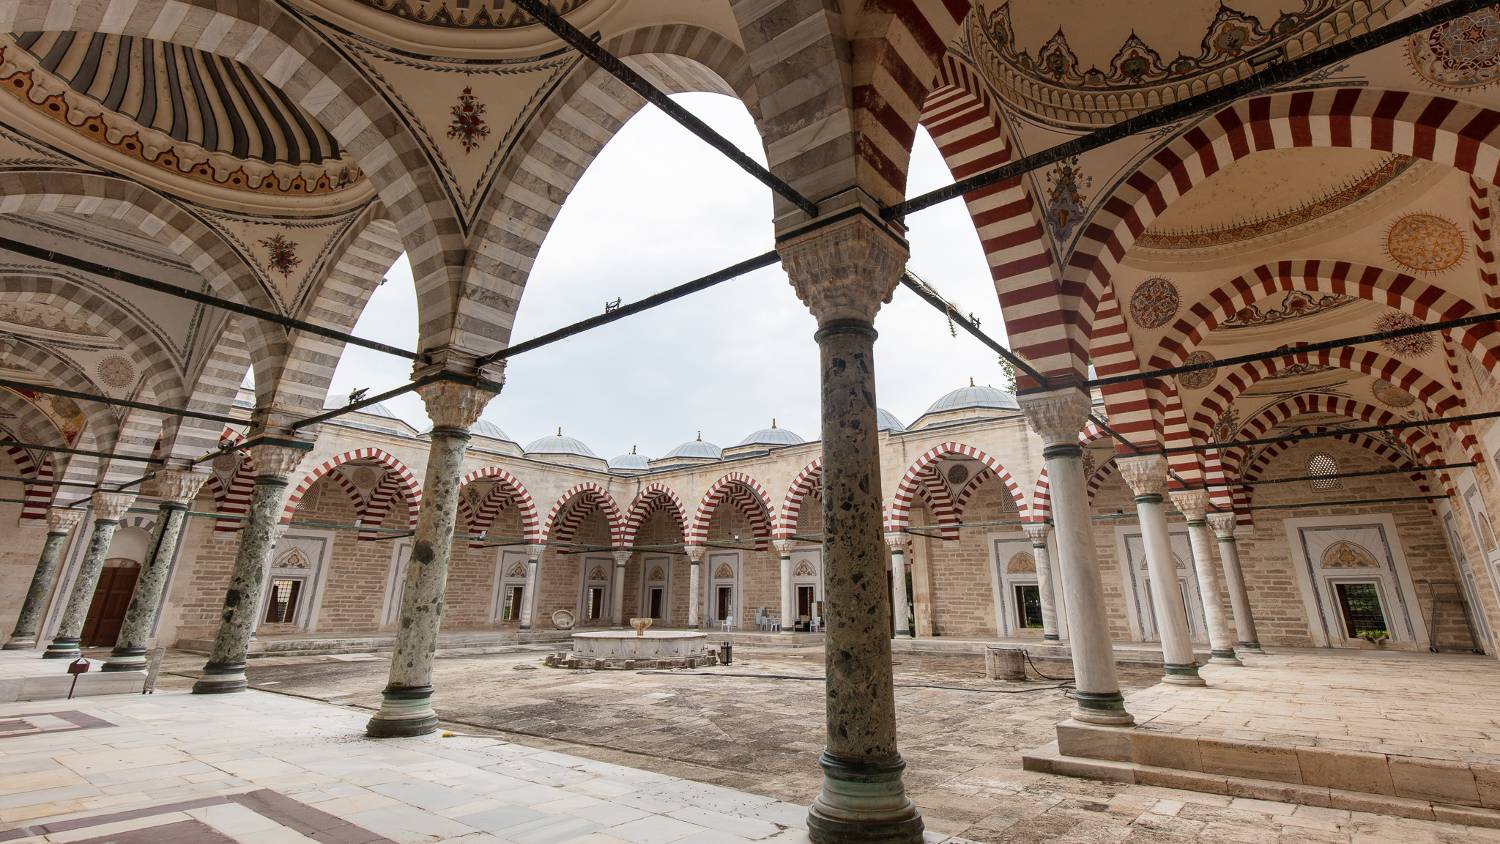 Les darushifas, comme celui-ci à Edirne, étaient souvent reliés aux mosquées, offrant une guérison holistique (Zirrar Ali)